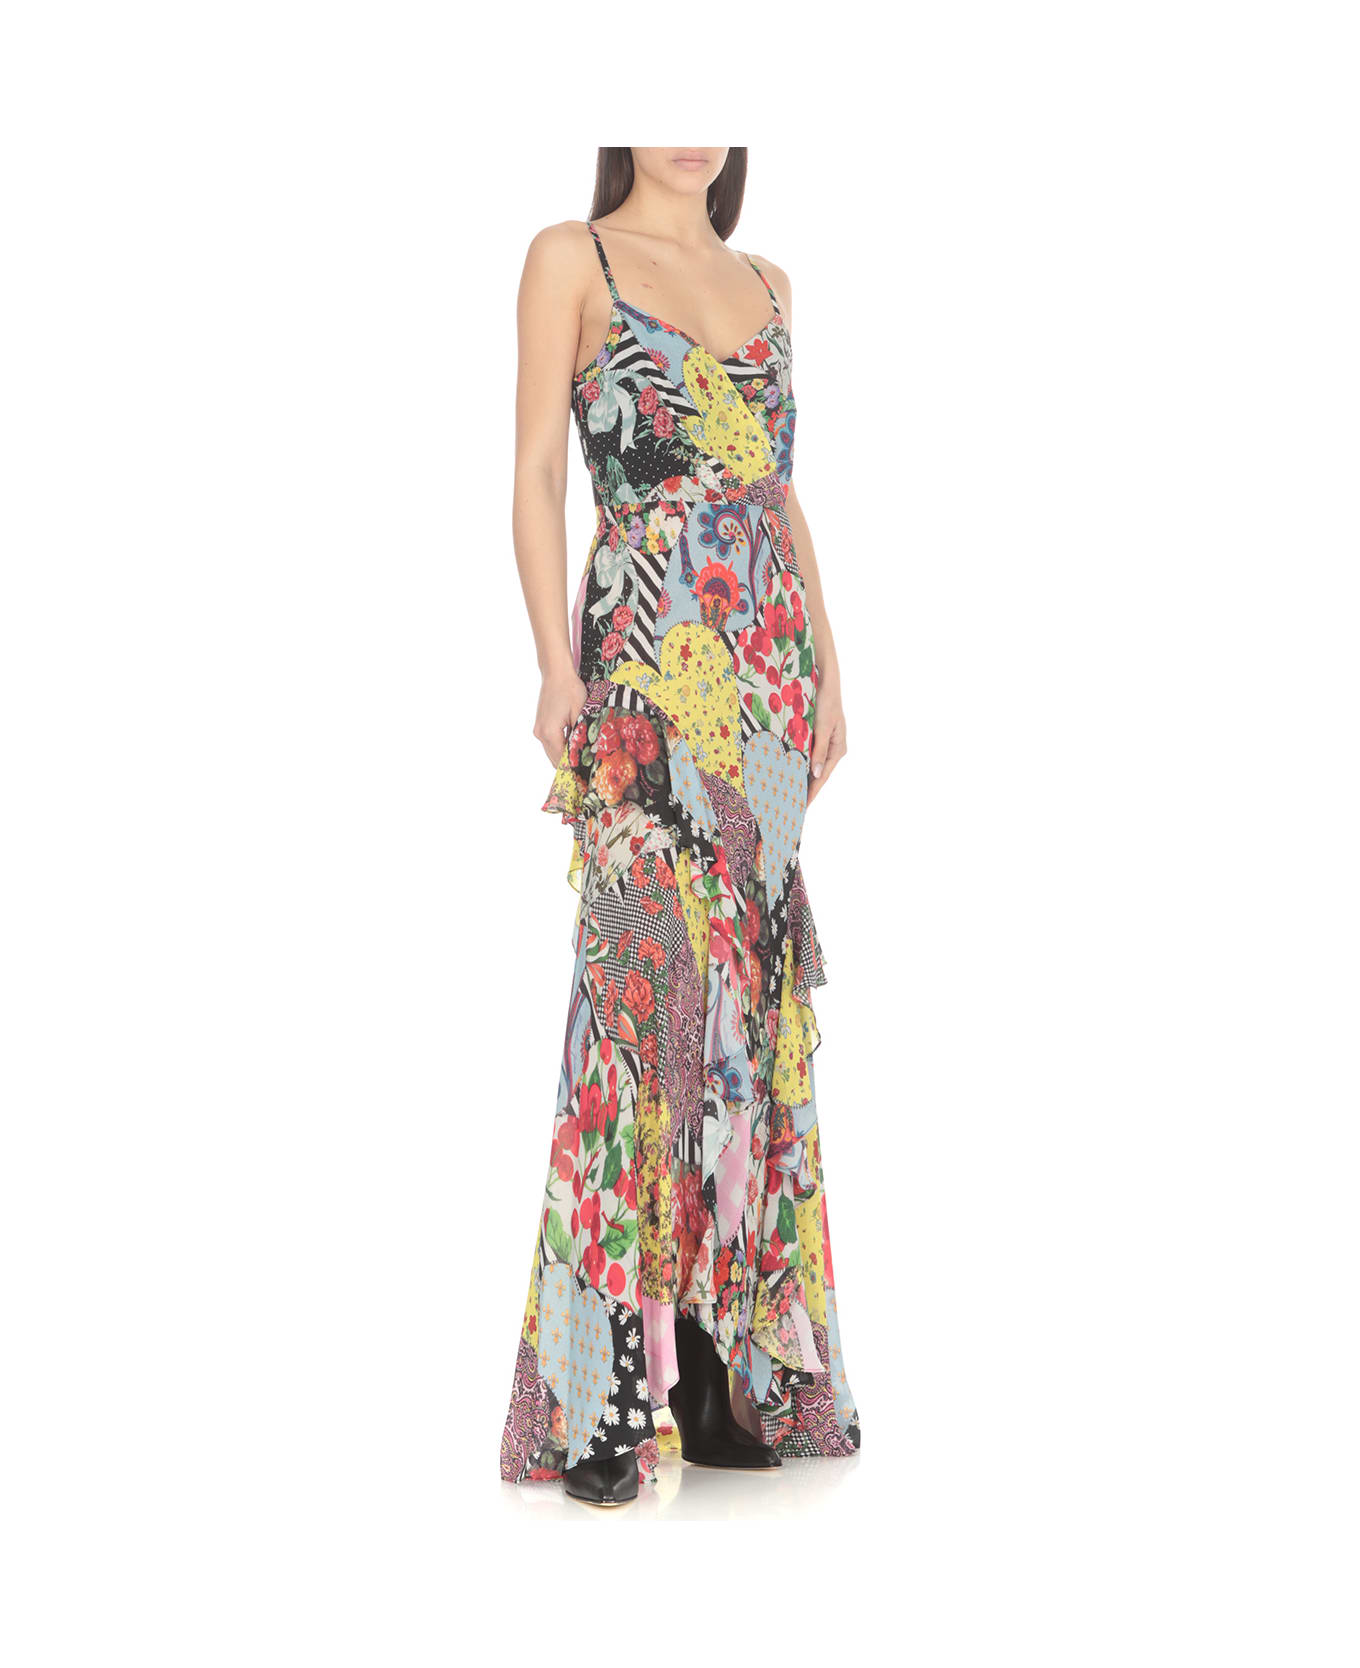 M05CH1N0 Jeans Long Floral Dress - MultiColour